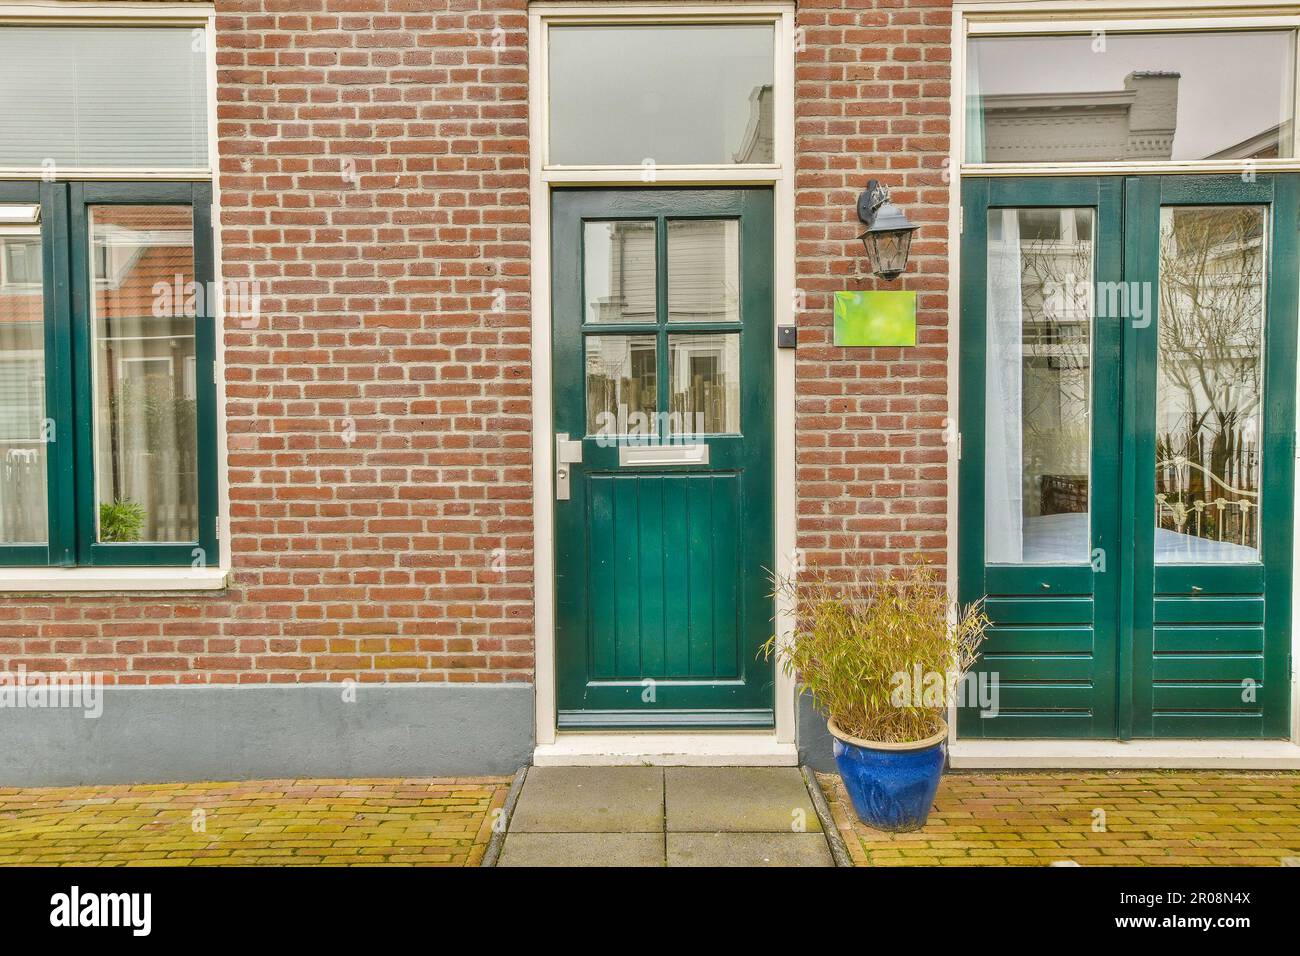 un bâtiment en briques avec deux portes vertes et un pot de fleurs bleues sur le trottoir devant la porte est vide Banque D'Images